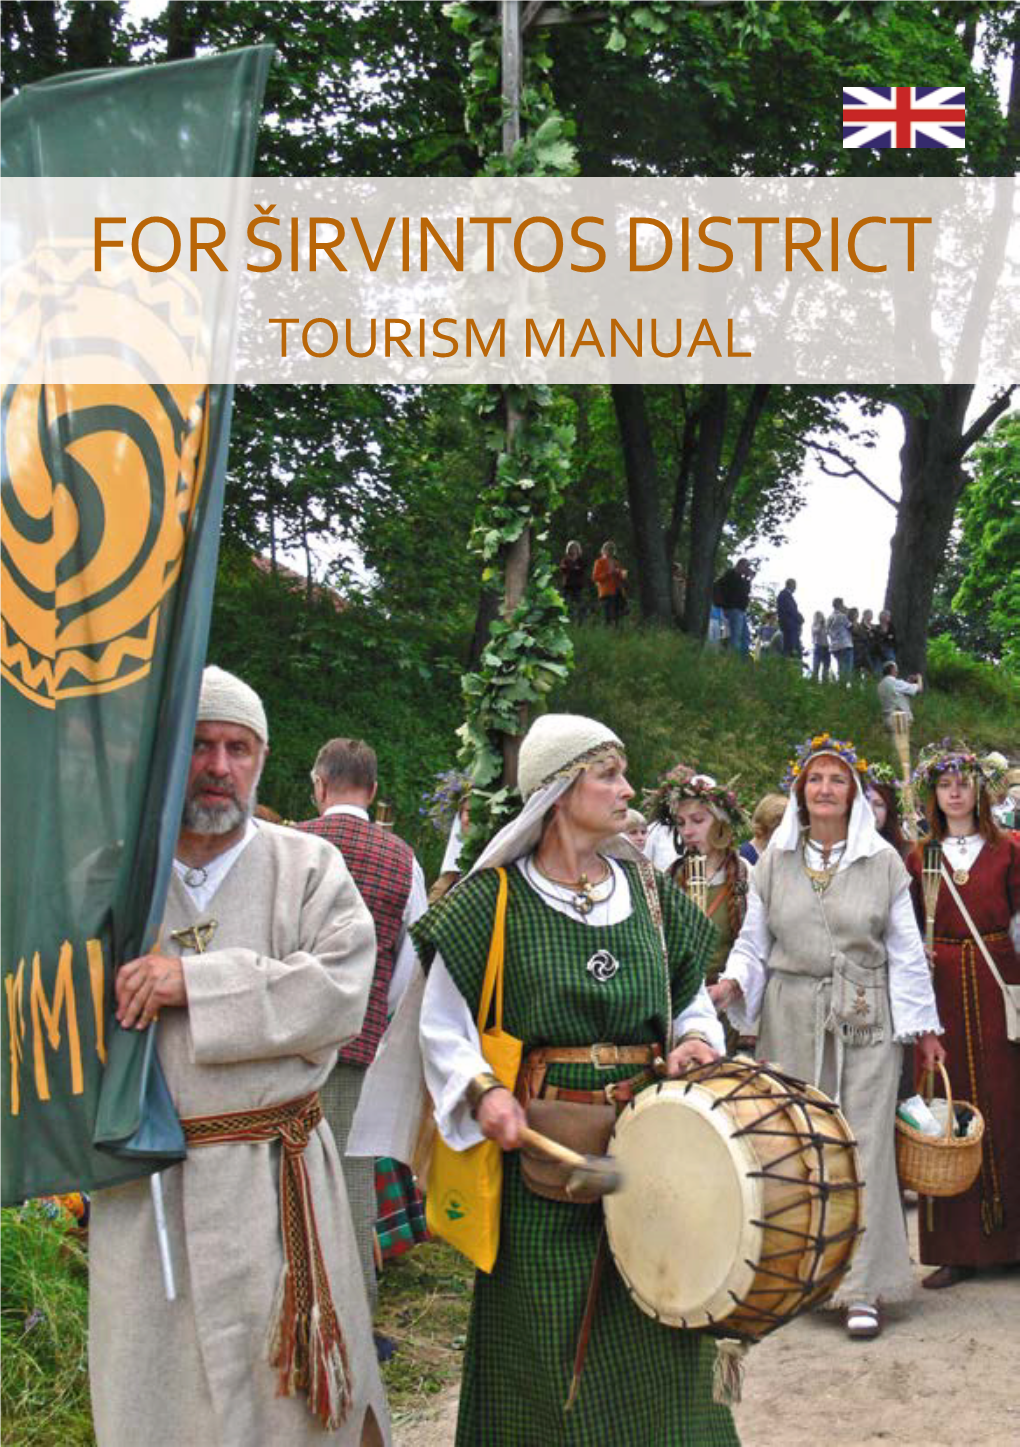 For Širvintos District Tourism Manual Contents